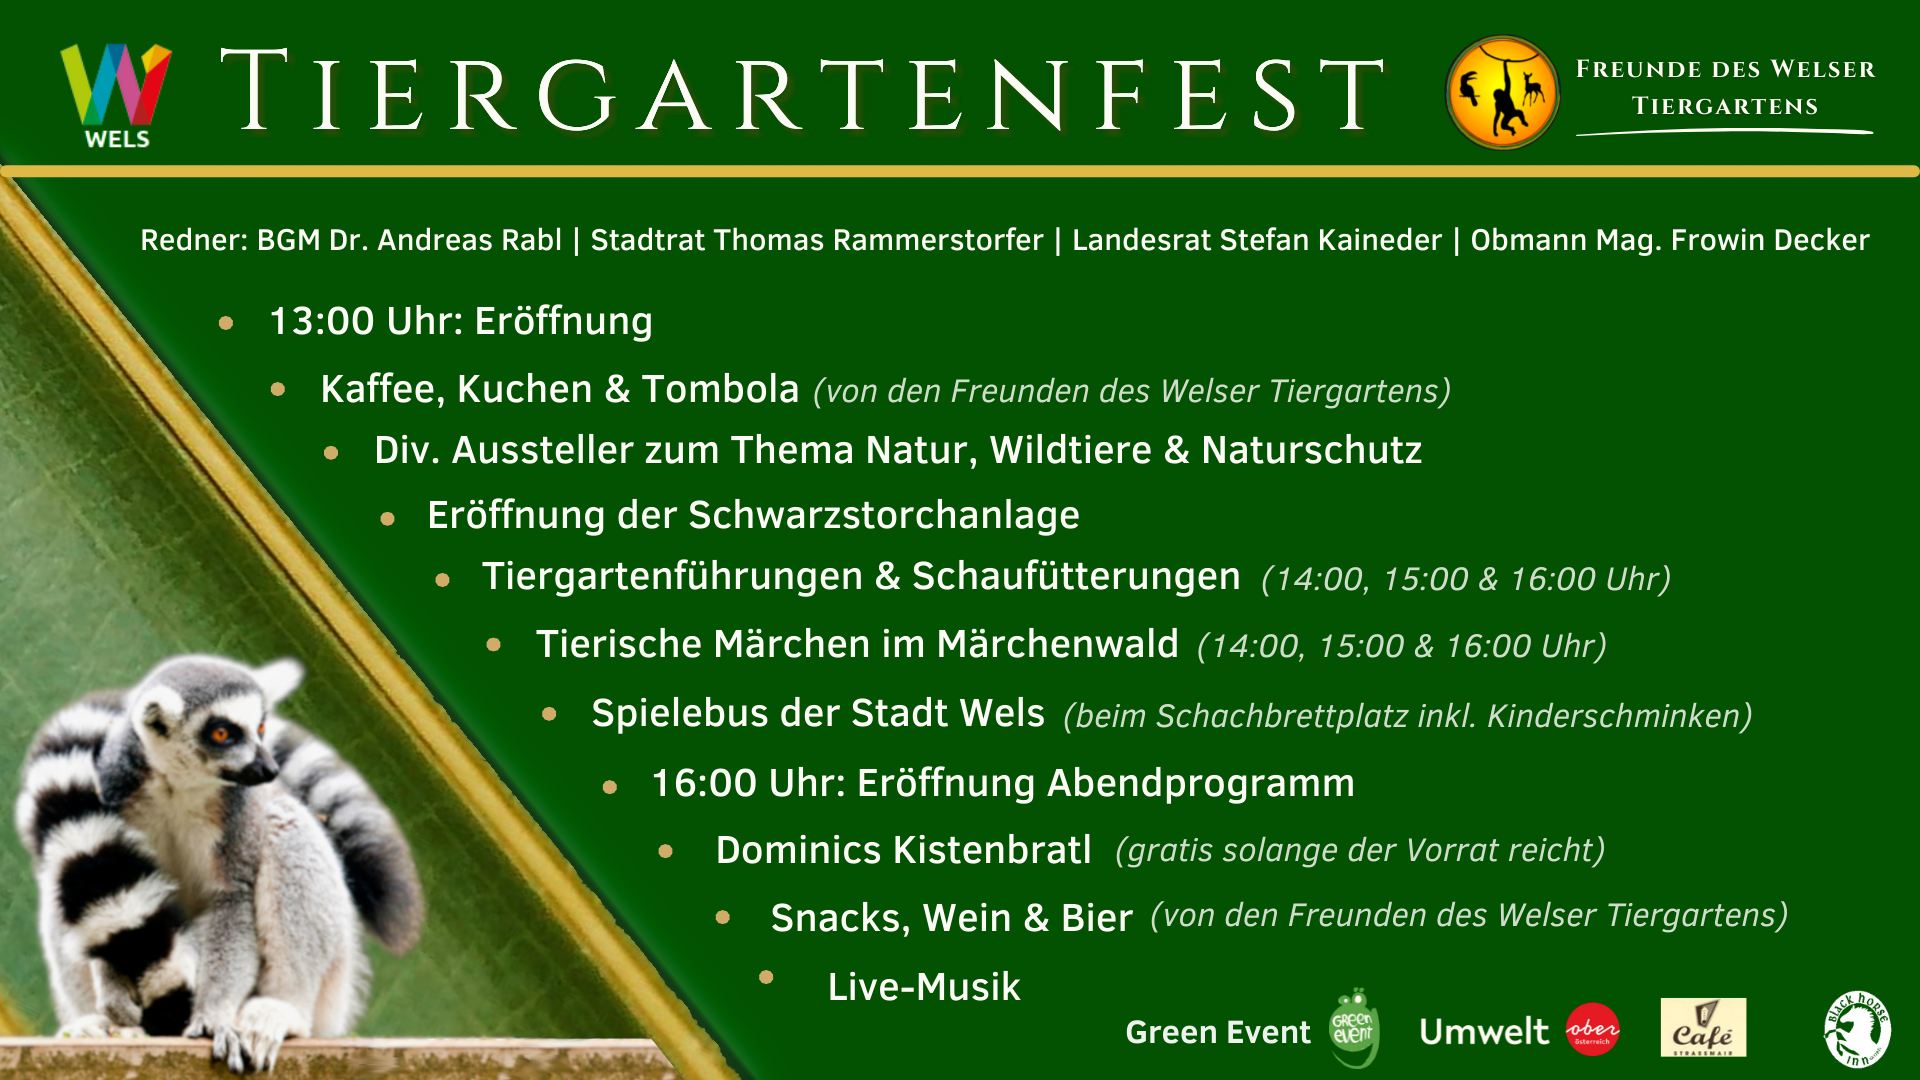 Festival "Glatt & Verkehrt" in Krems diesmal kurz und bündig